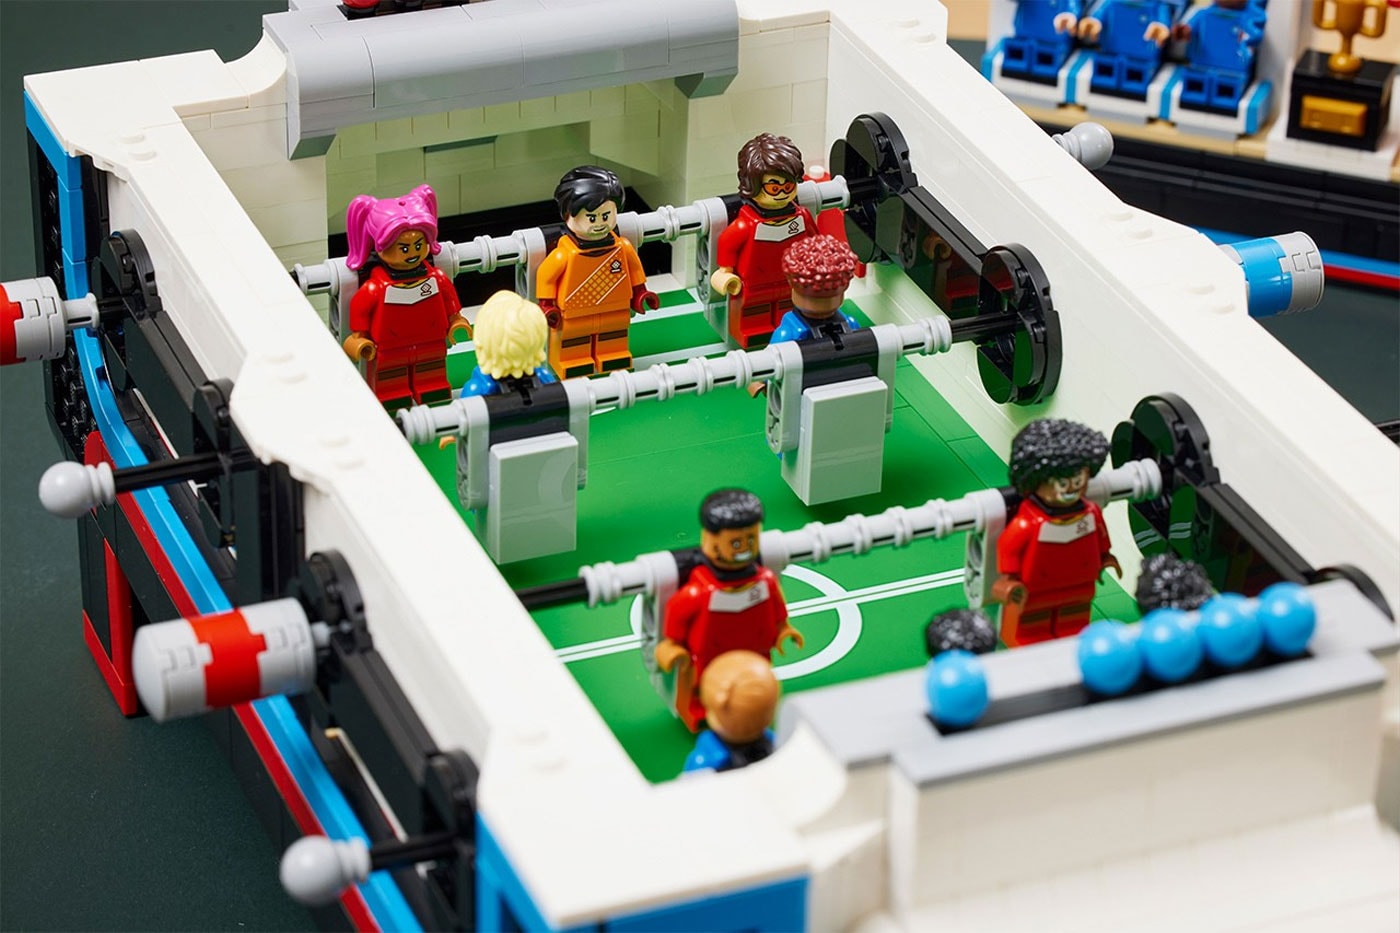 LEGO Soccer Table Set Releasing On November 1st